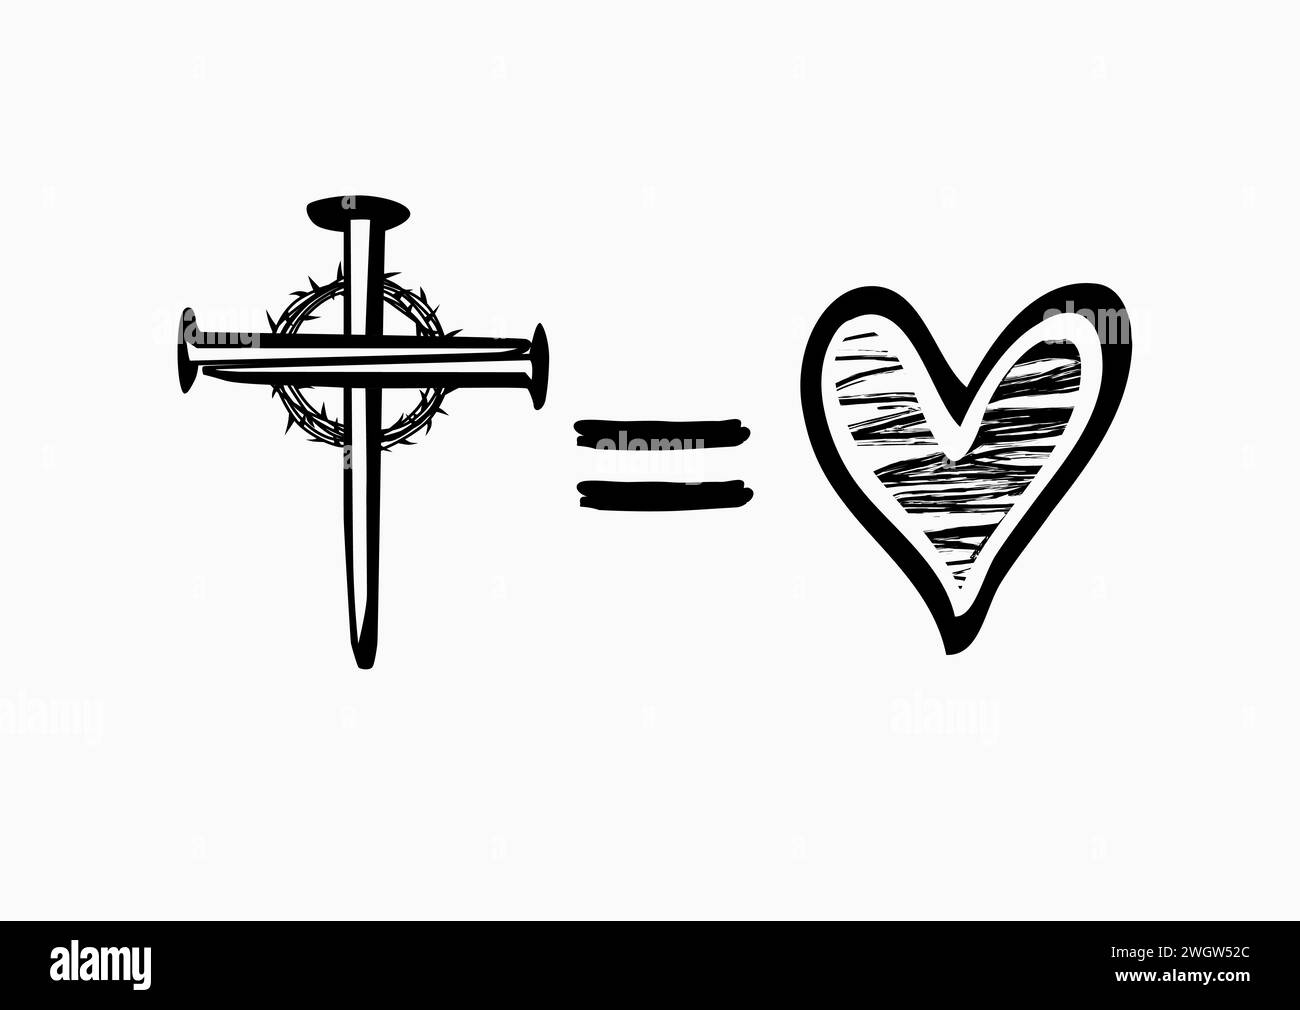 Dio è amore, croce equivale ai simboli del cuore. T-shirt della domenica di Pasqua - croce di chiodi con corona di spine e cuore in stile grunge. Illustrazione vettoriale Illustrazione Vettoriale